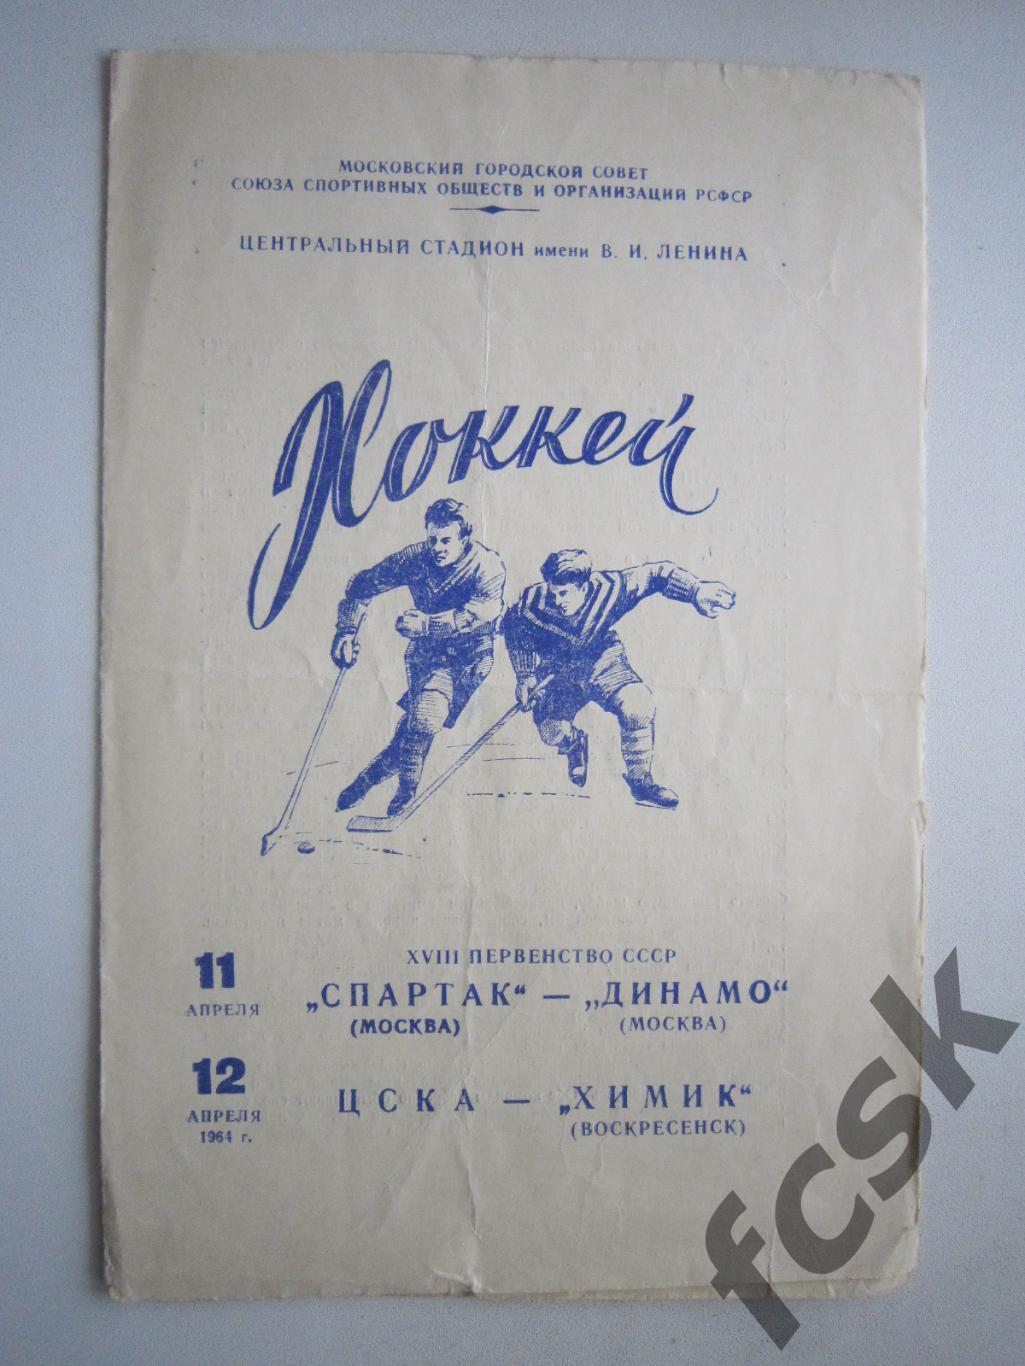 Спартак Москва - Динамо Москва ЦСКА - Химик Воскресенск 11-12.04.1964 (ф)